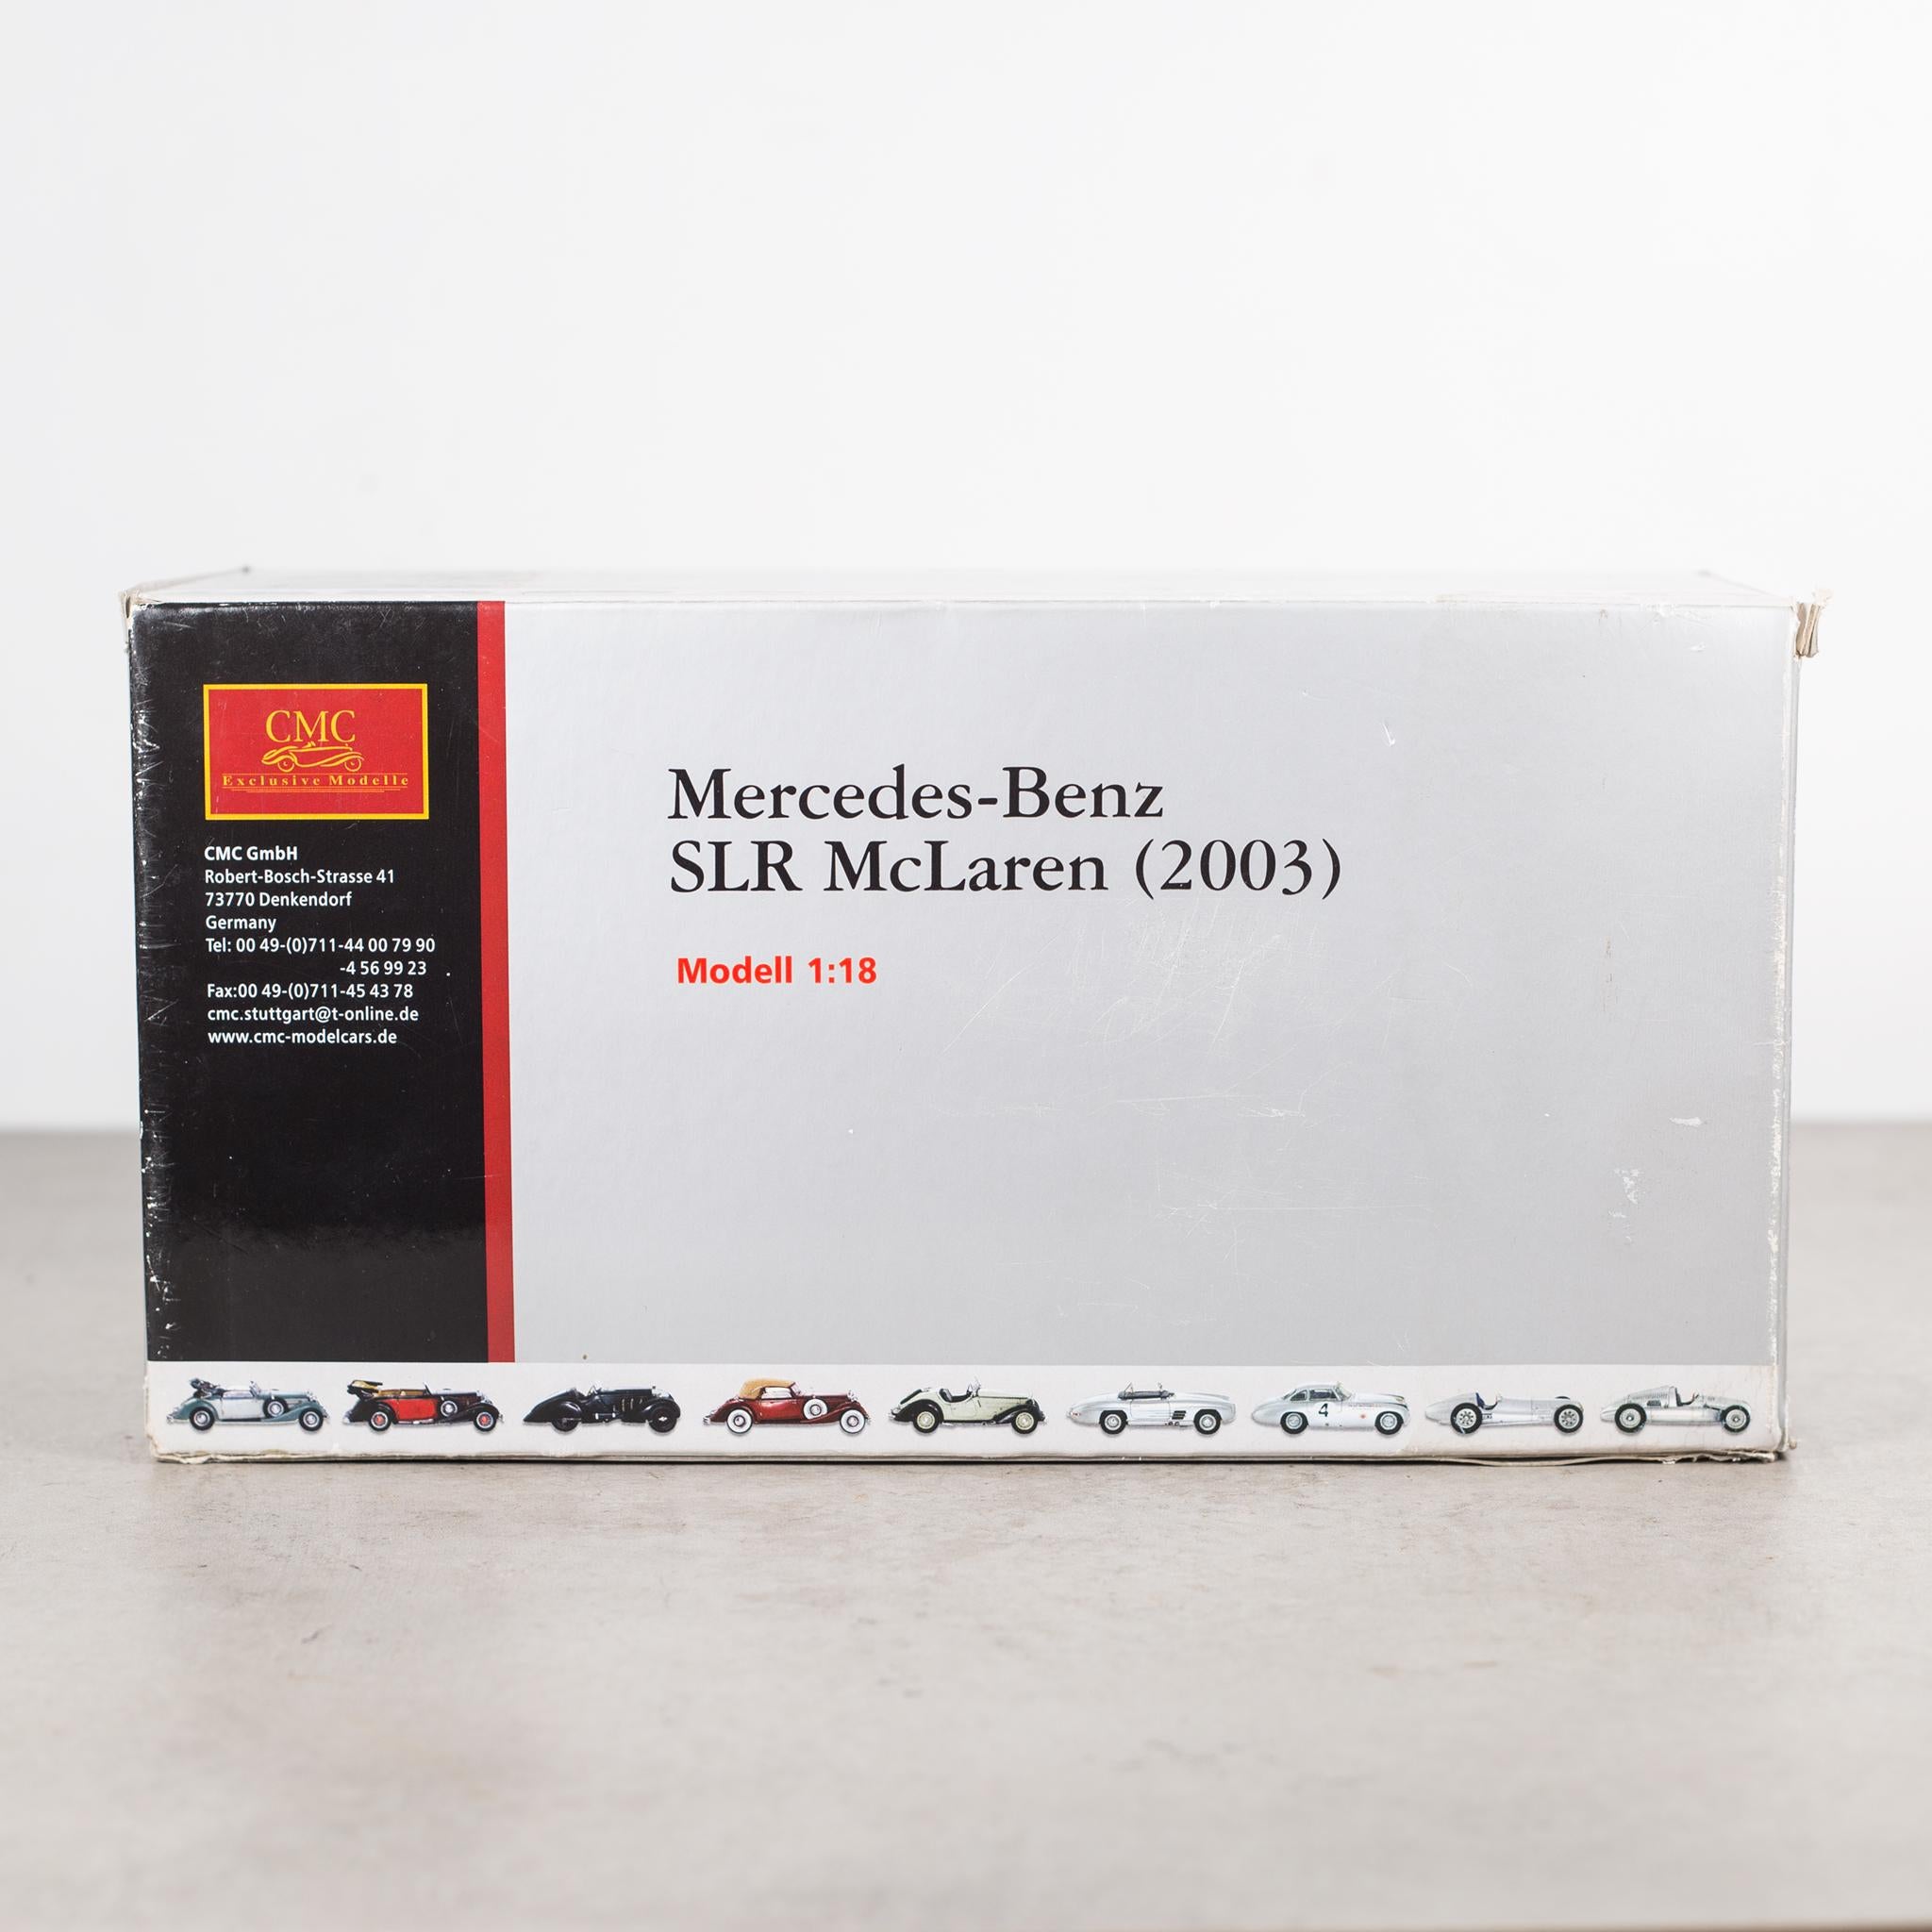 Exact Replica Mecedes-Benz SLR McLaren Model, circa 2003 2